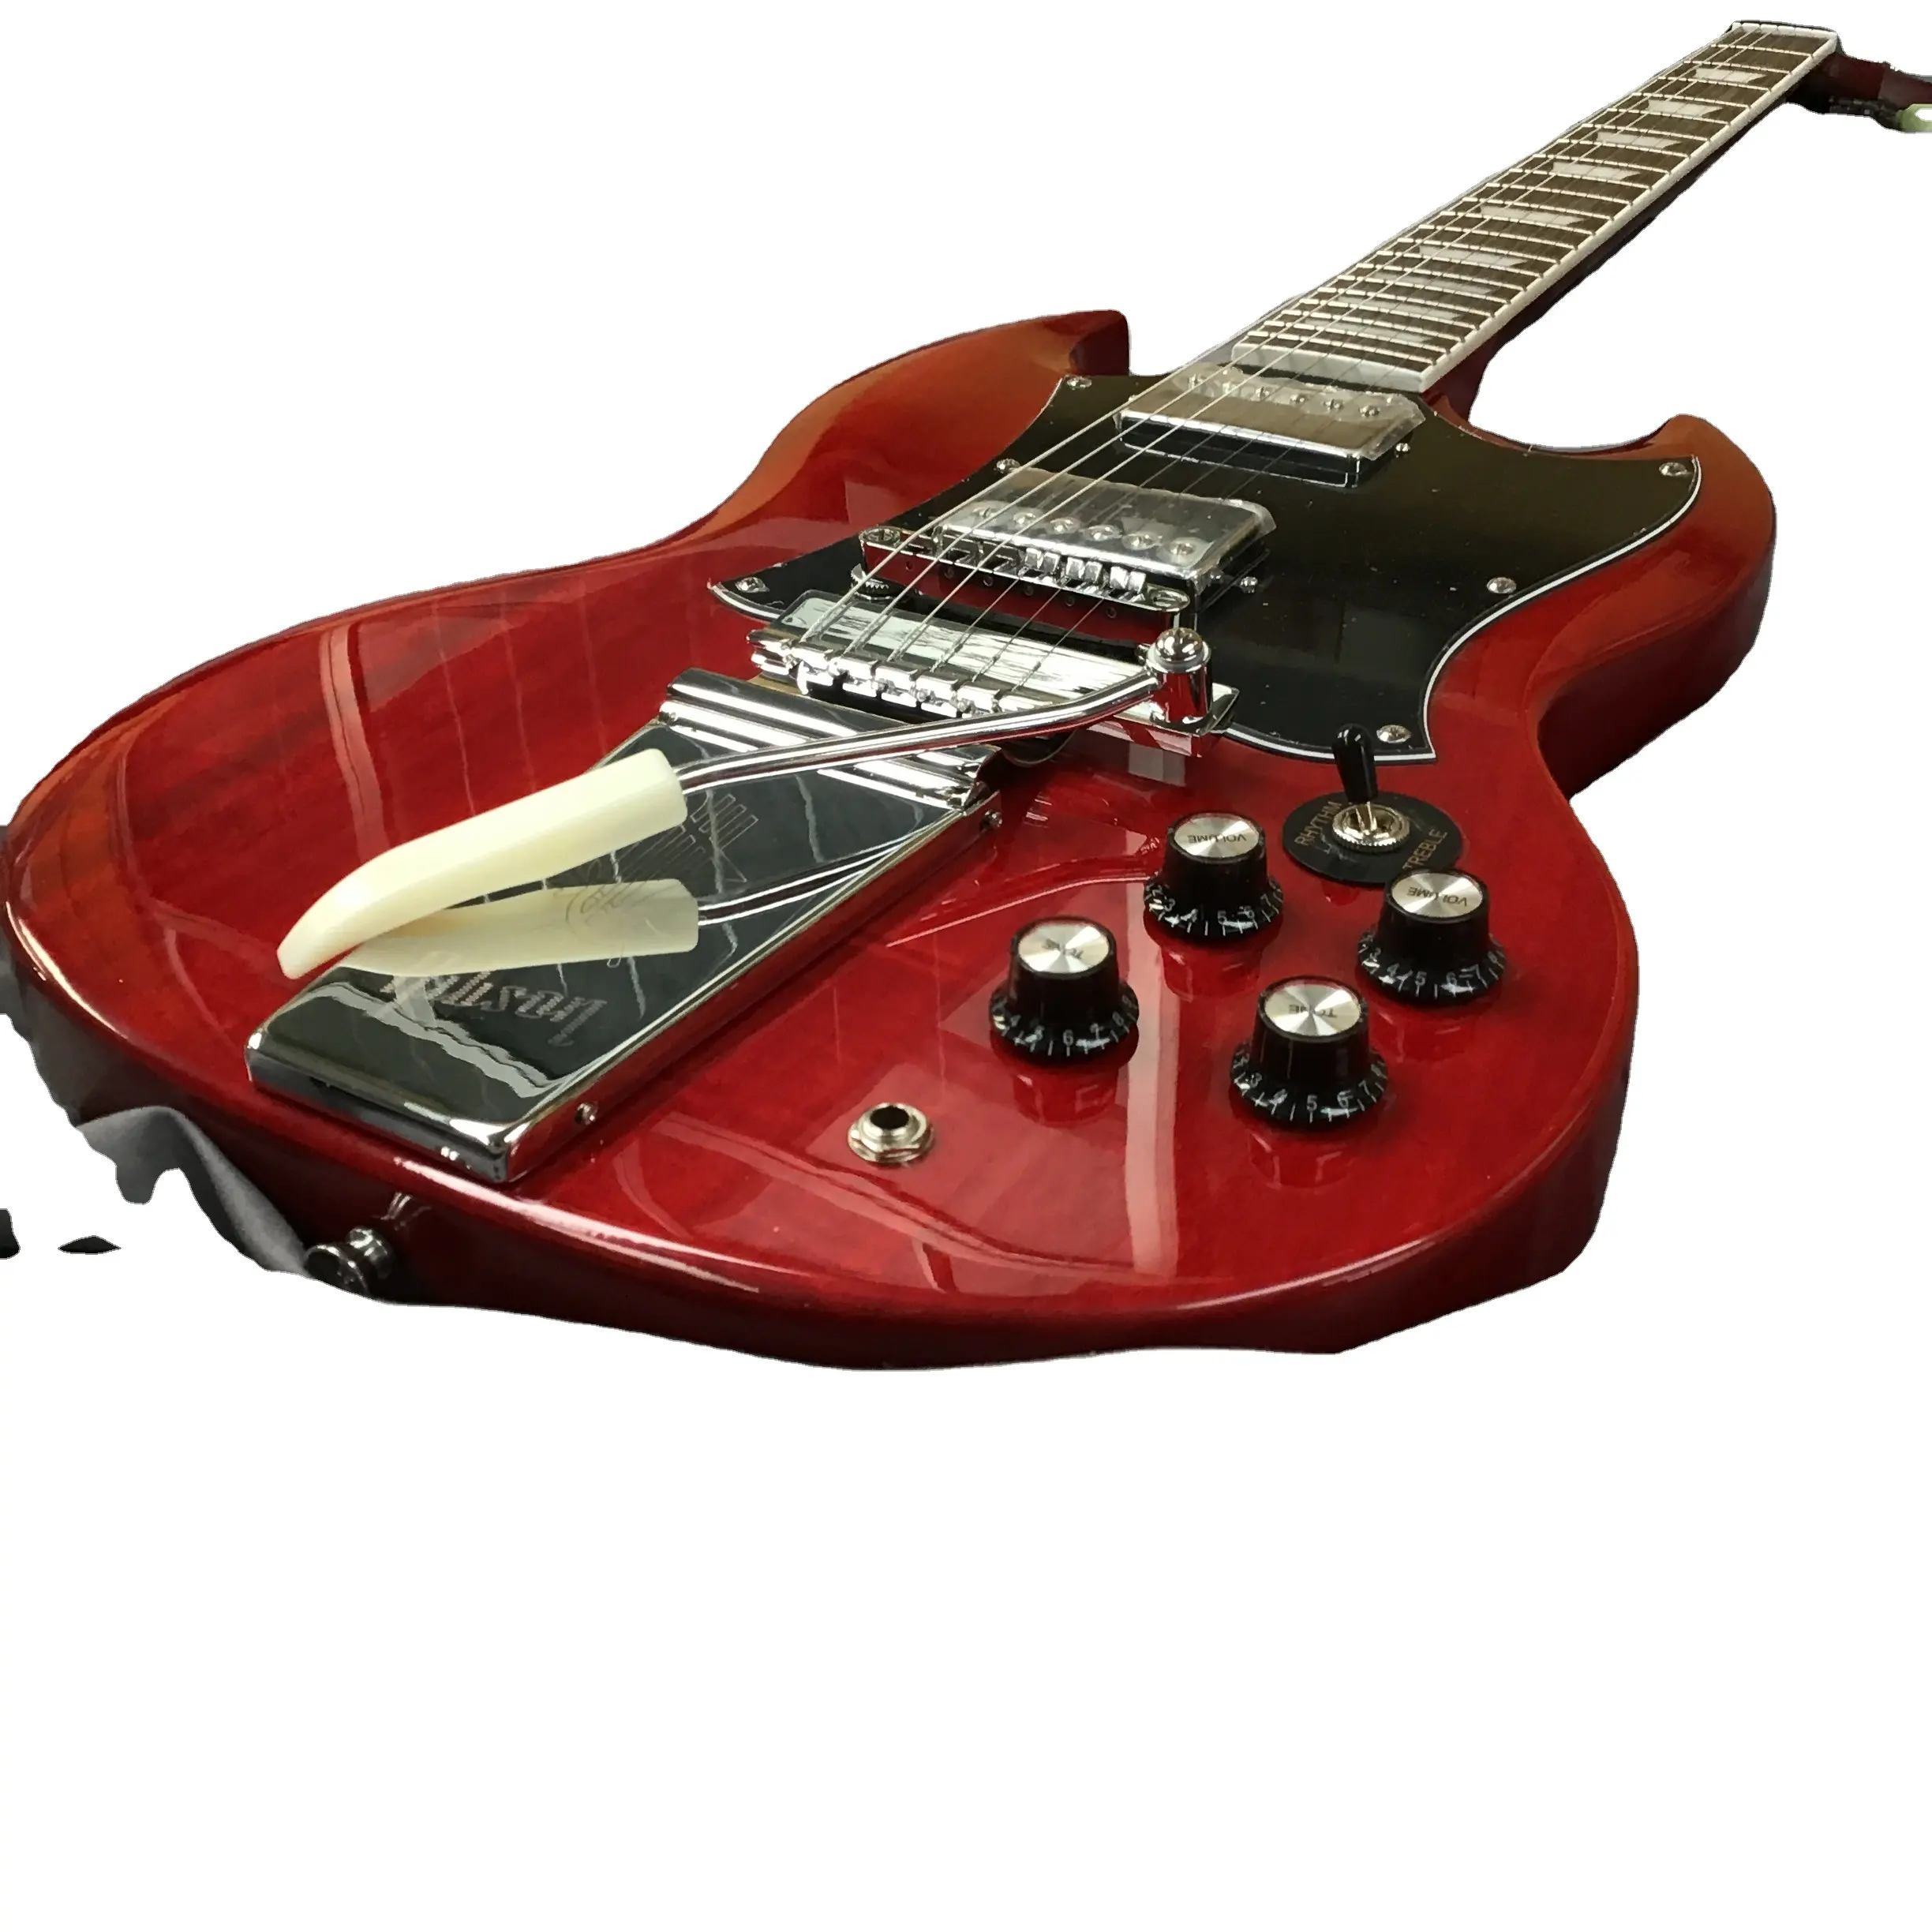 レッドエレクトリックギター6弦HHピックアップ高速配送Gブランドギターバー付き